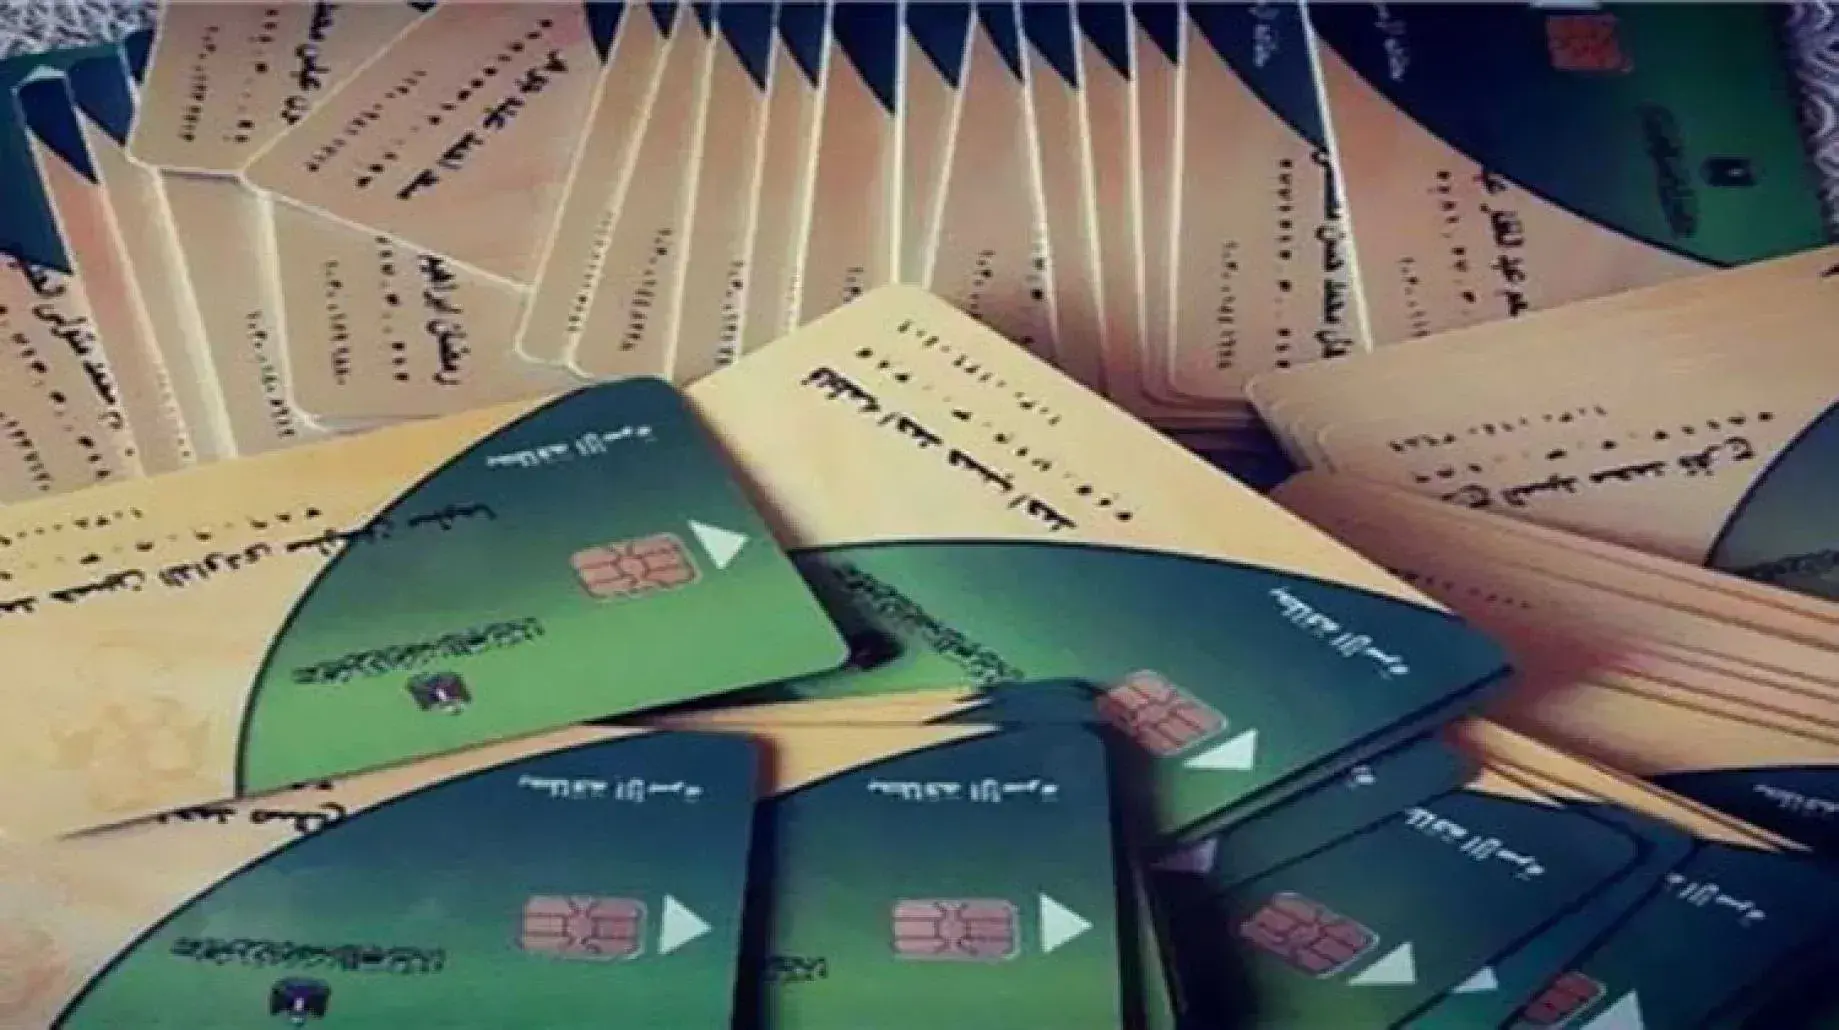 "عشان ماتتوقفش"| 7 أبريل المهلة الأخيرة لتحديث بطاقة التموين